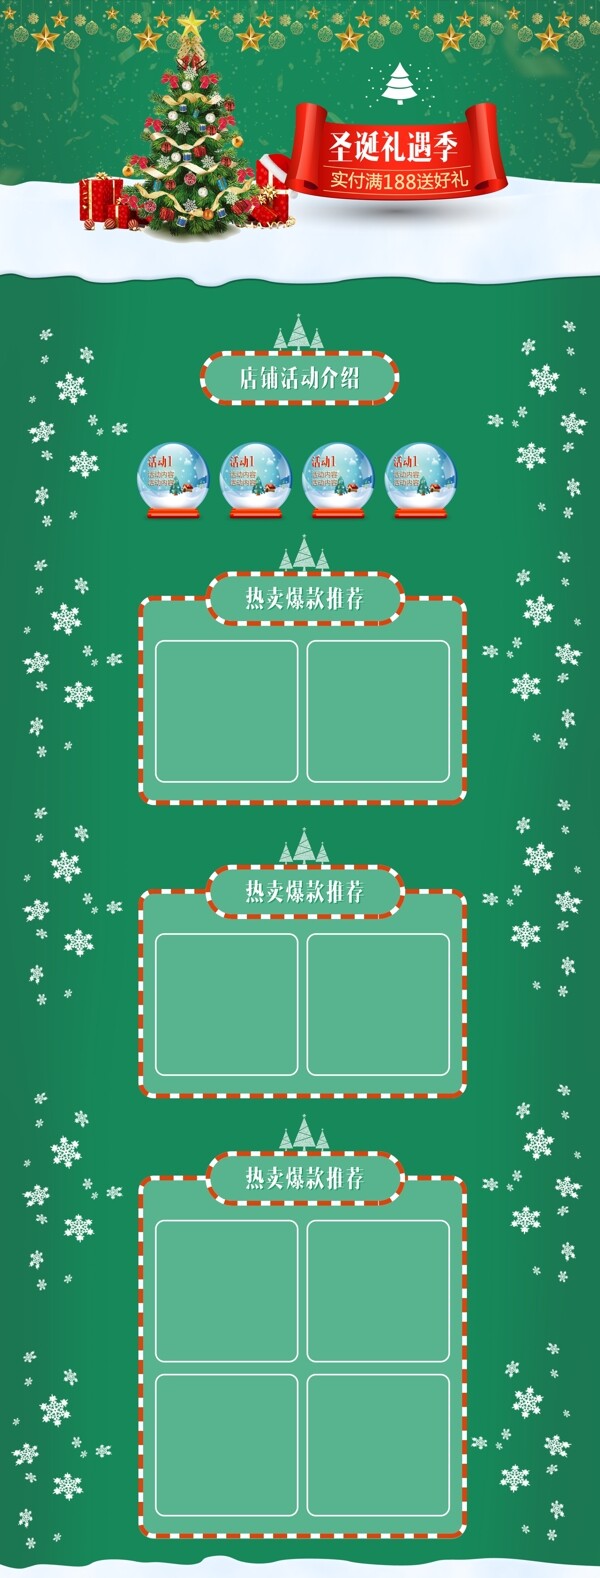 绿色雪花圣诞树圣诞节电商淘宝活动页模板